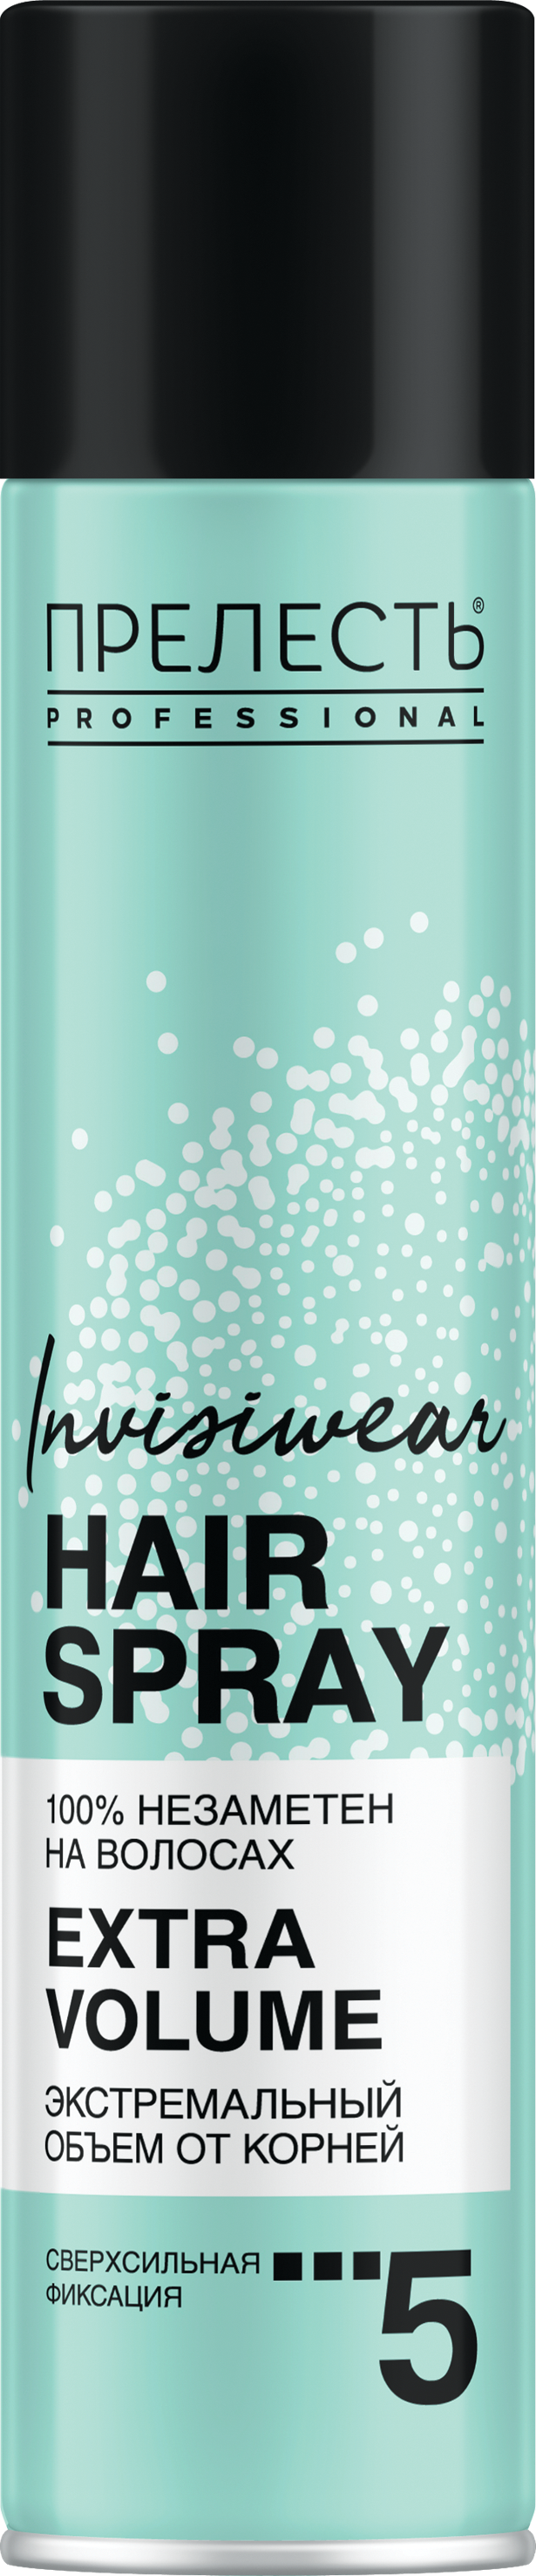 Лак для волос Прелесть Invisiwear Невесомый, экстремальный объем, 300 мл лак для волос сверхсильной фиксации прелесть защита и фиксация 200 мл